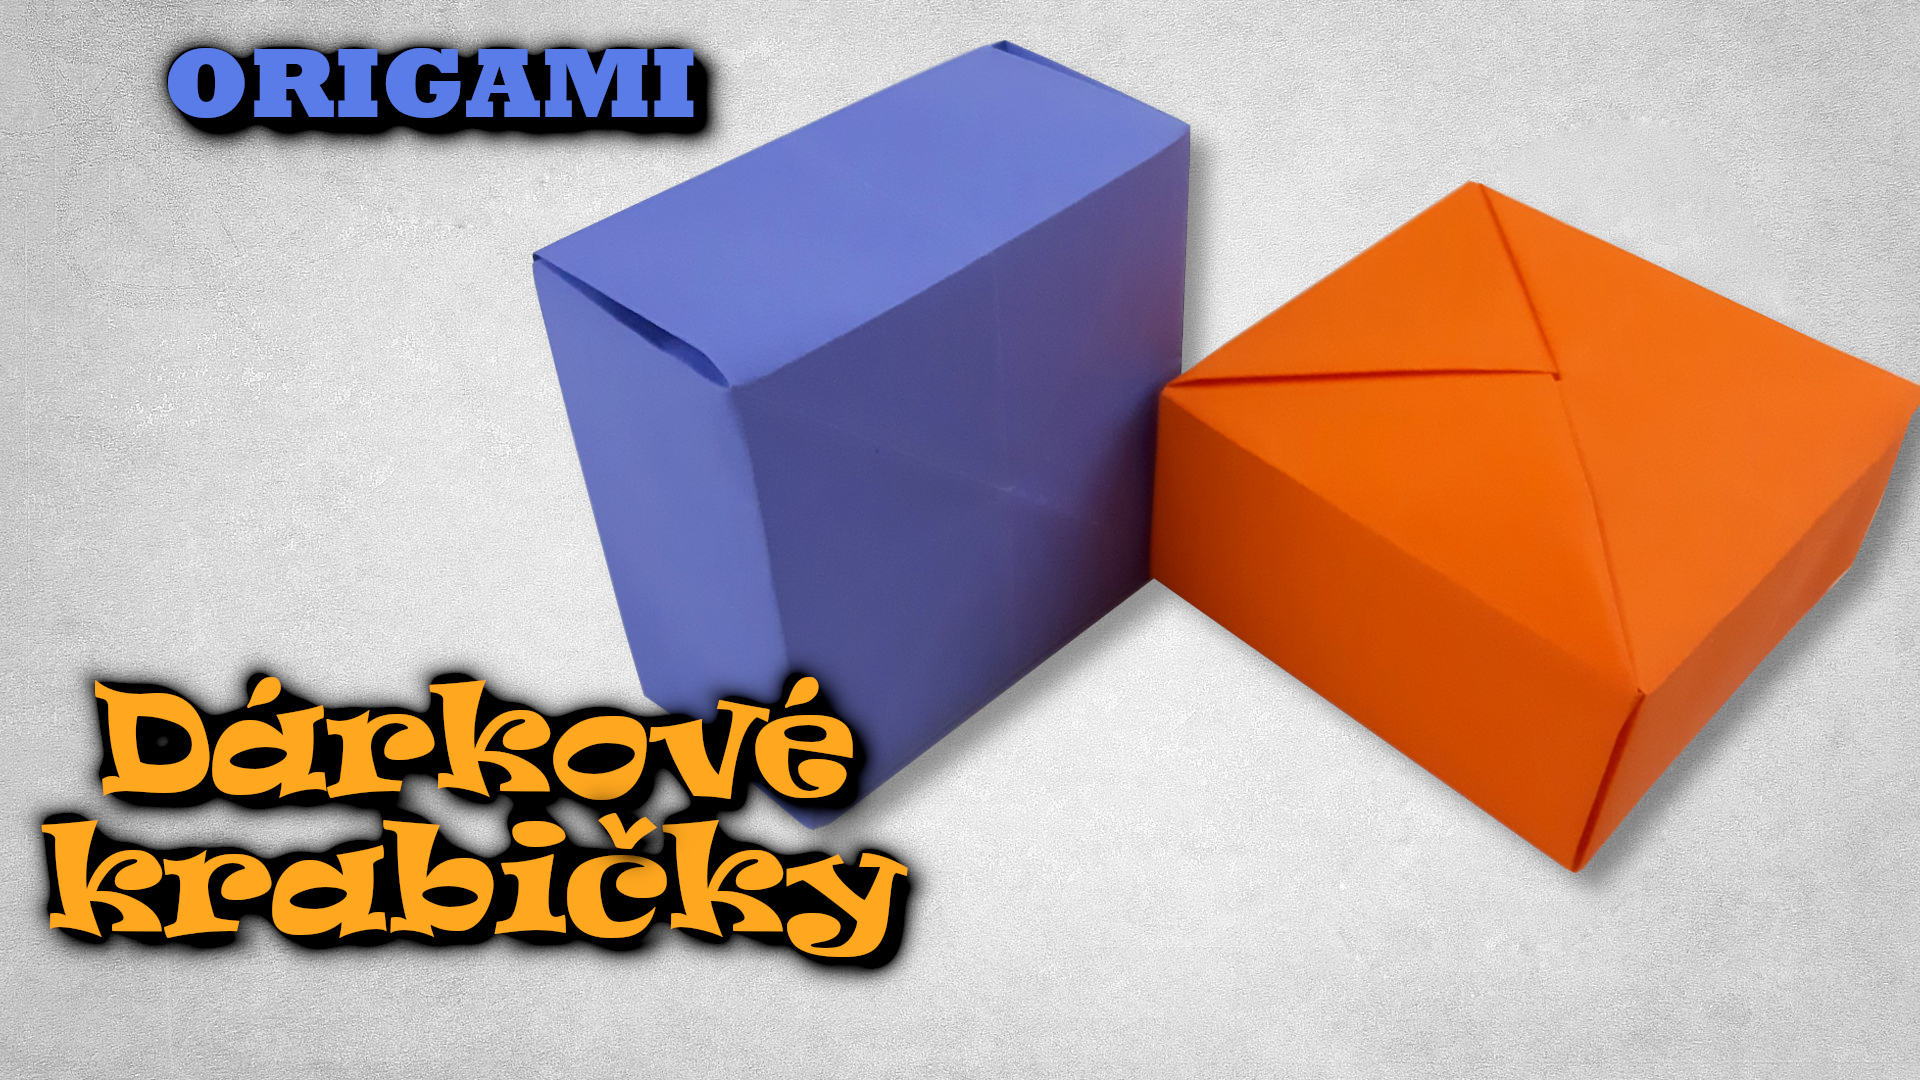 Dárkové krabičky z papíru - origami krabička z jednoho kusu papíru